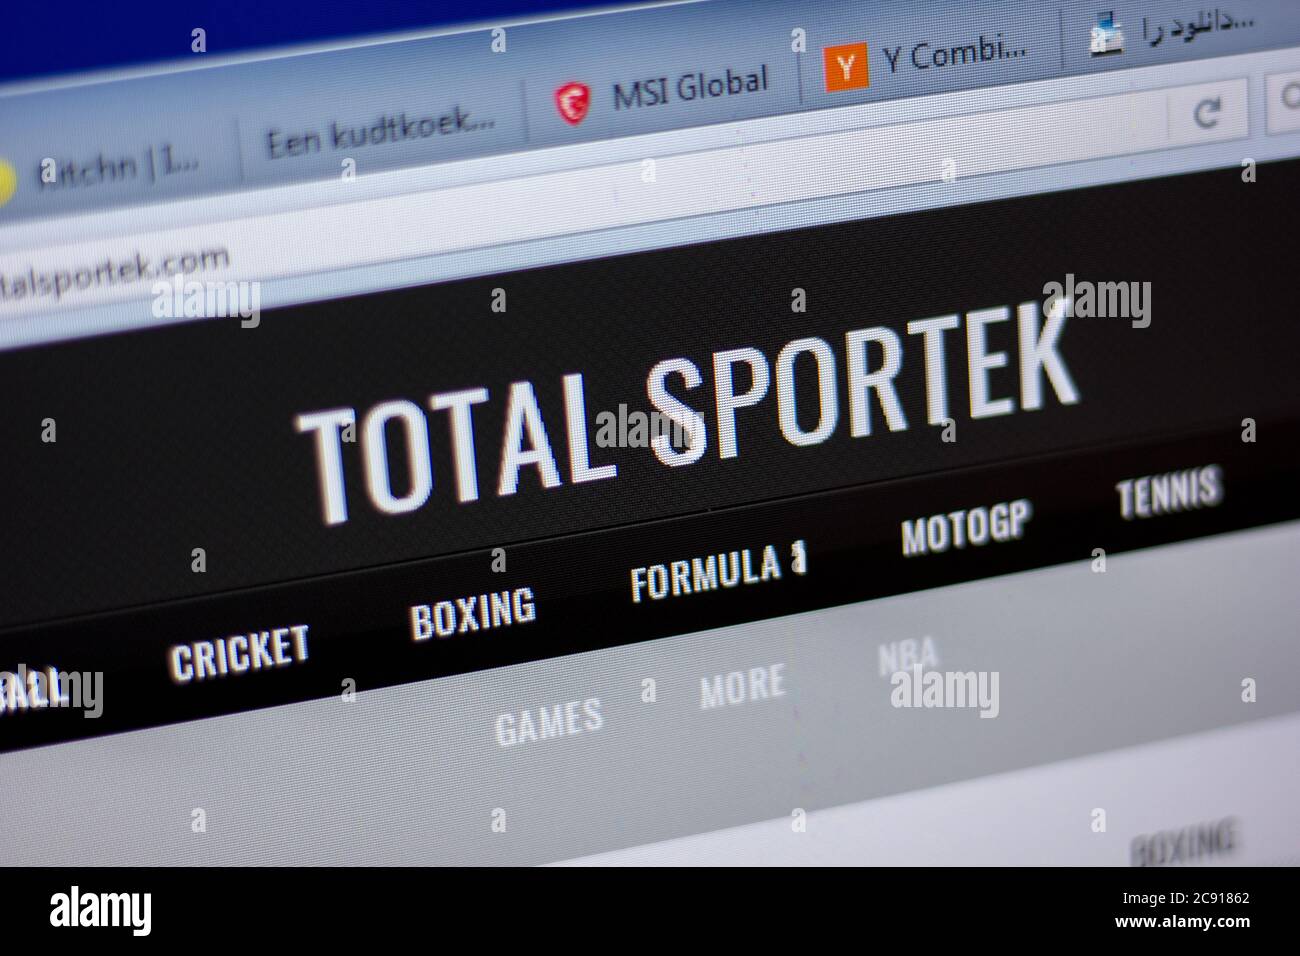 totalsportek formula one